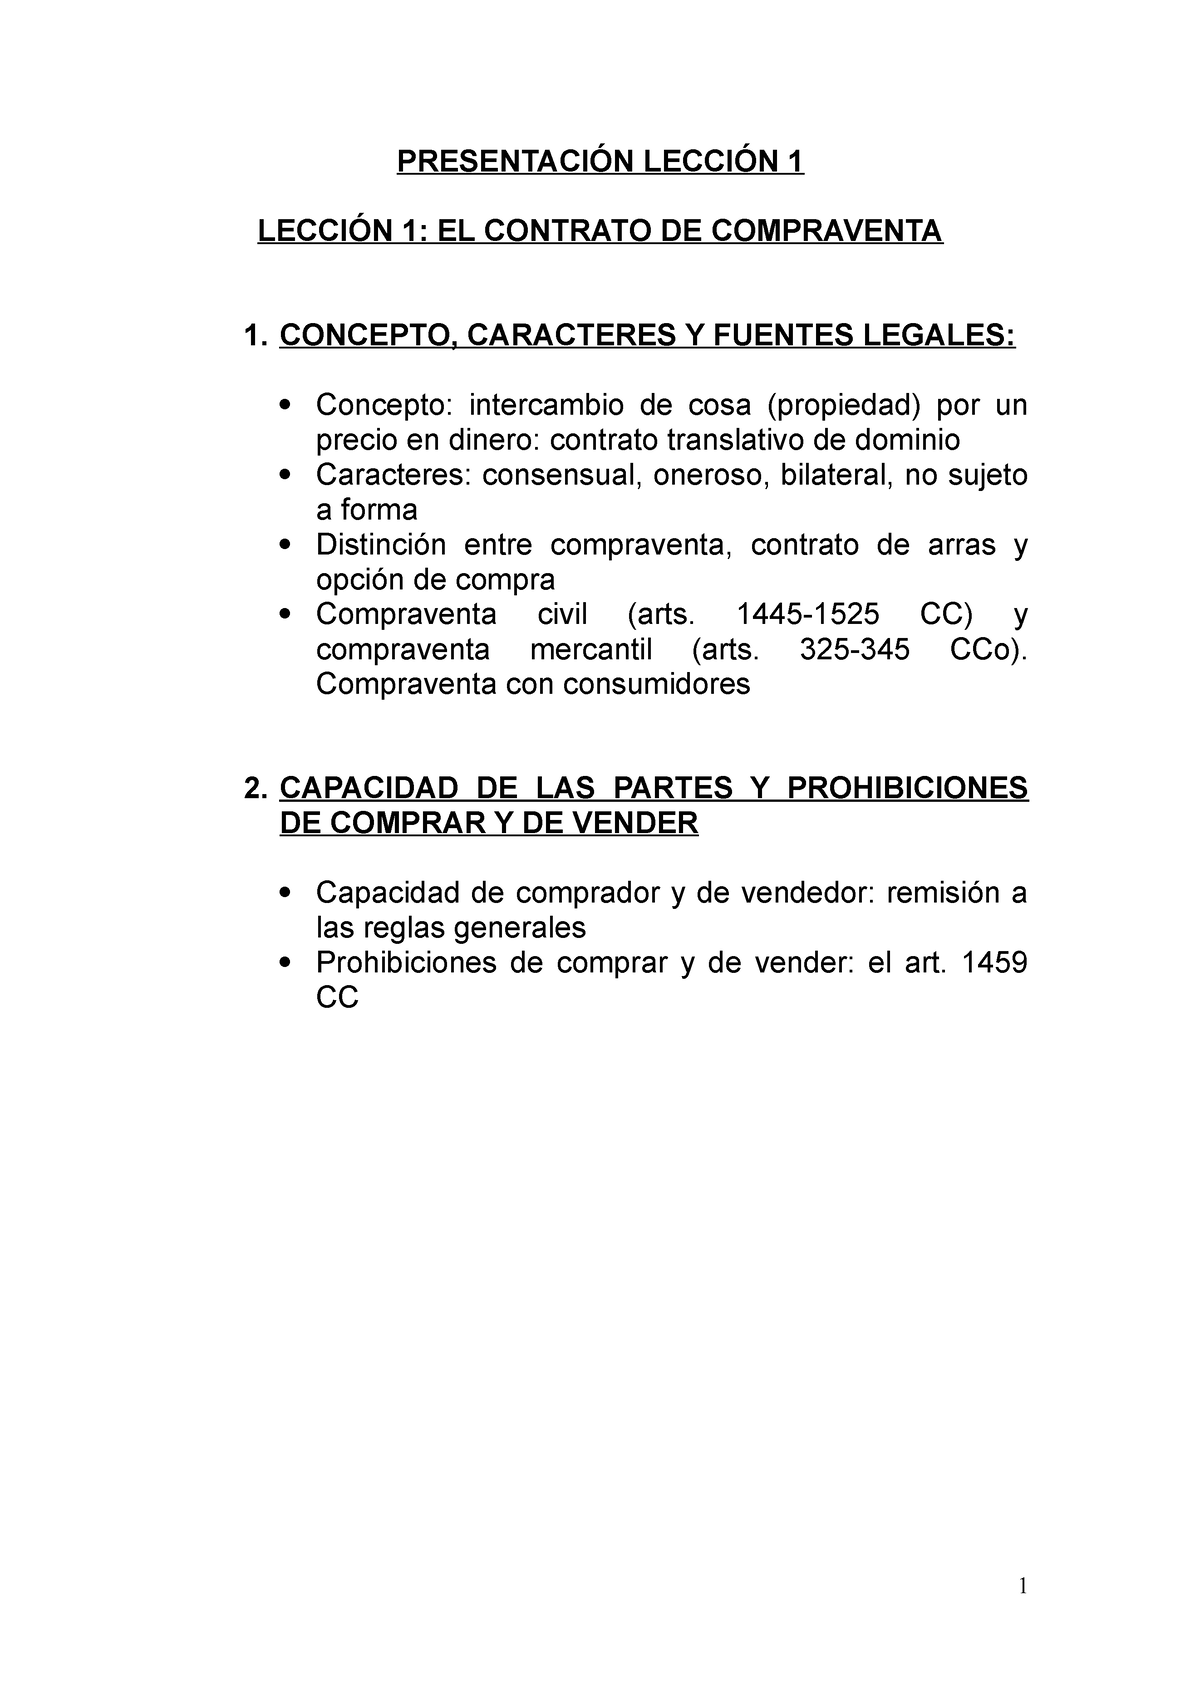 Tema 1 El Contrato De Compraventa PresentaciÓn LecciÓn 1 LecciÓn 1 El Contrato De 4084